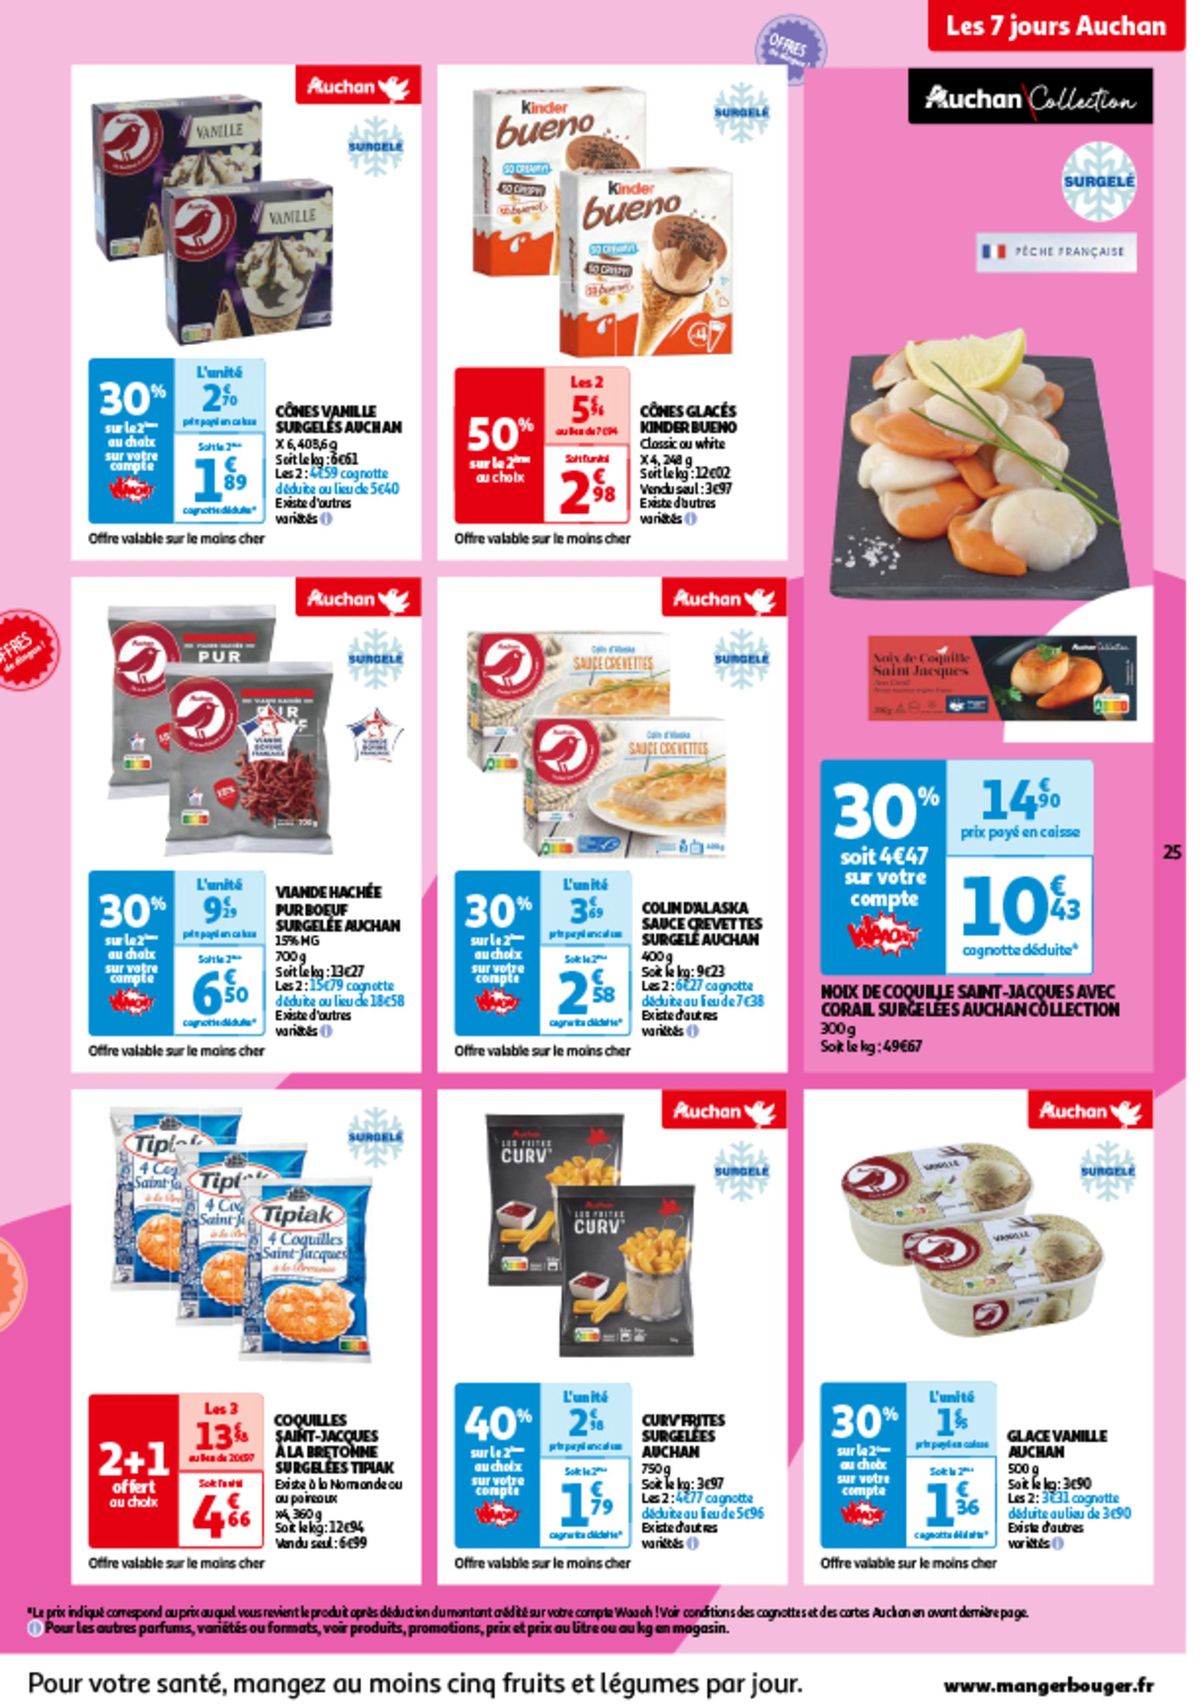 Catalogue Les 7 jours Auchan, c'est maintenant !, page 00025